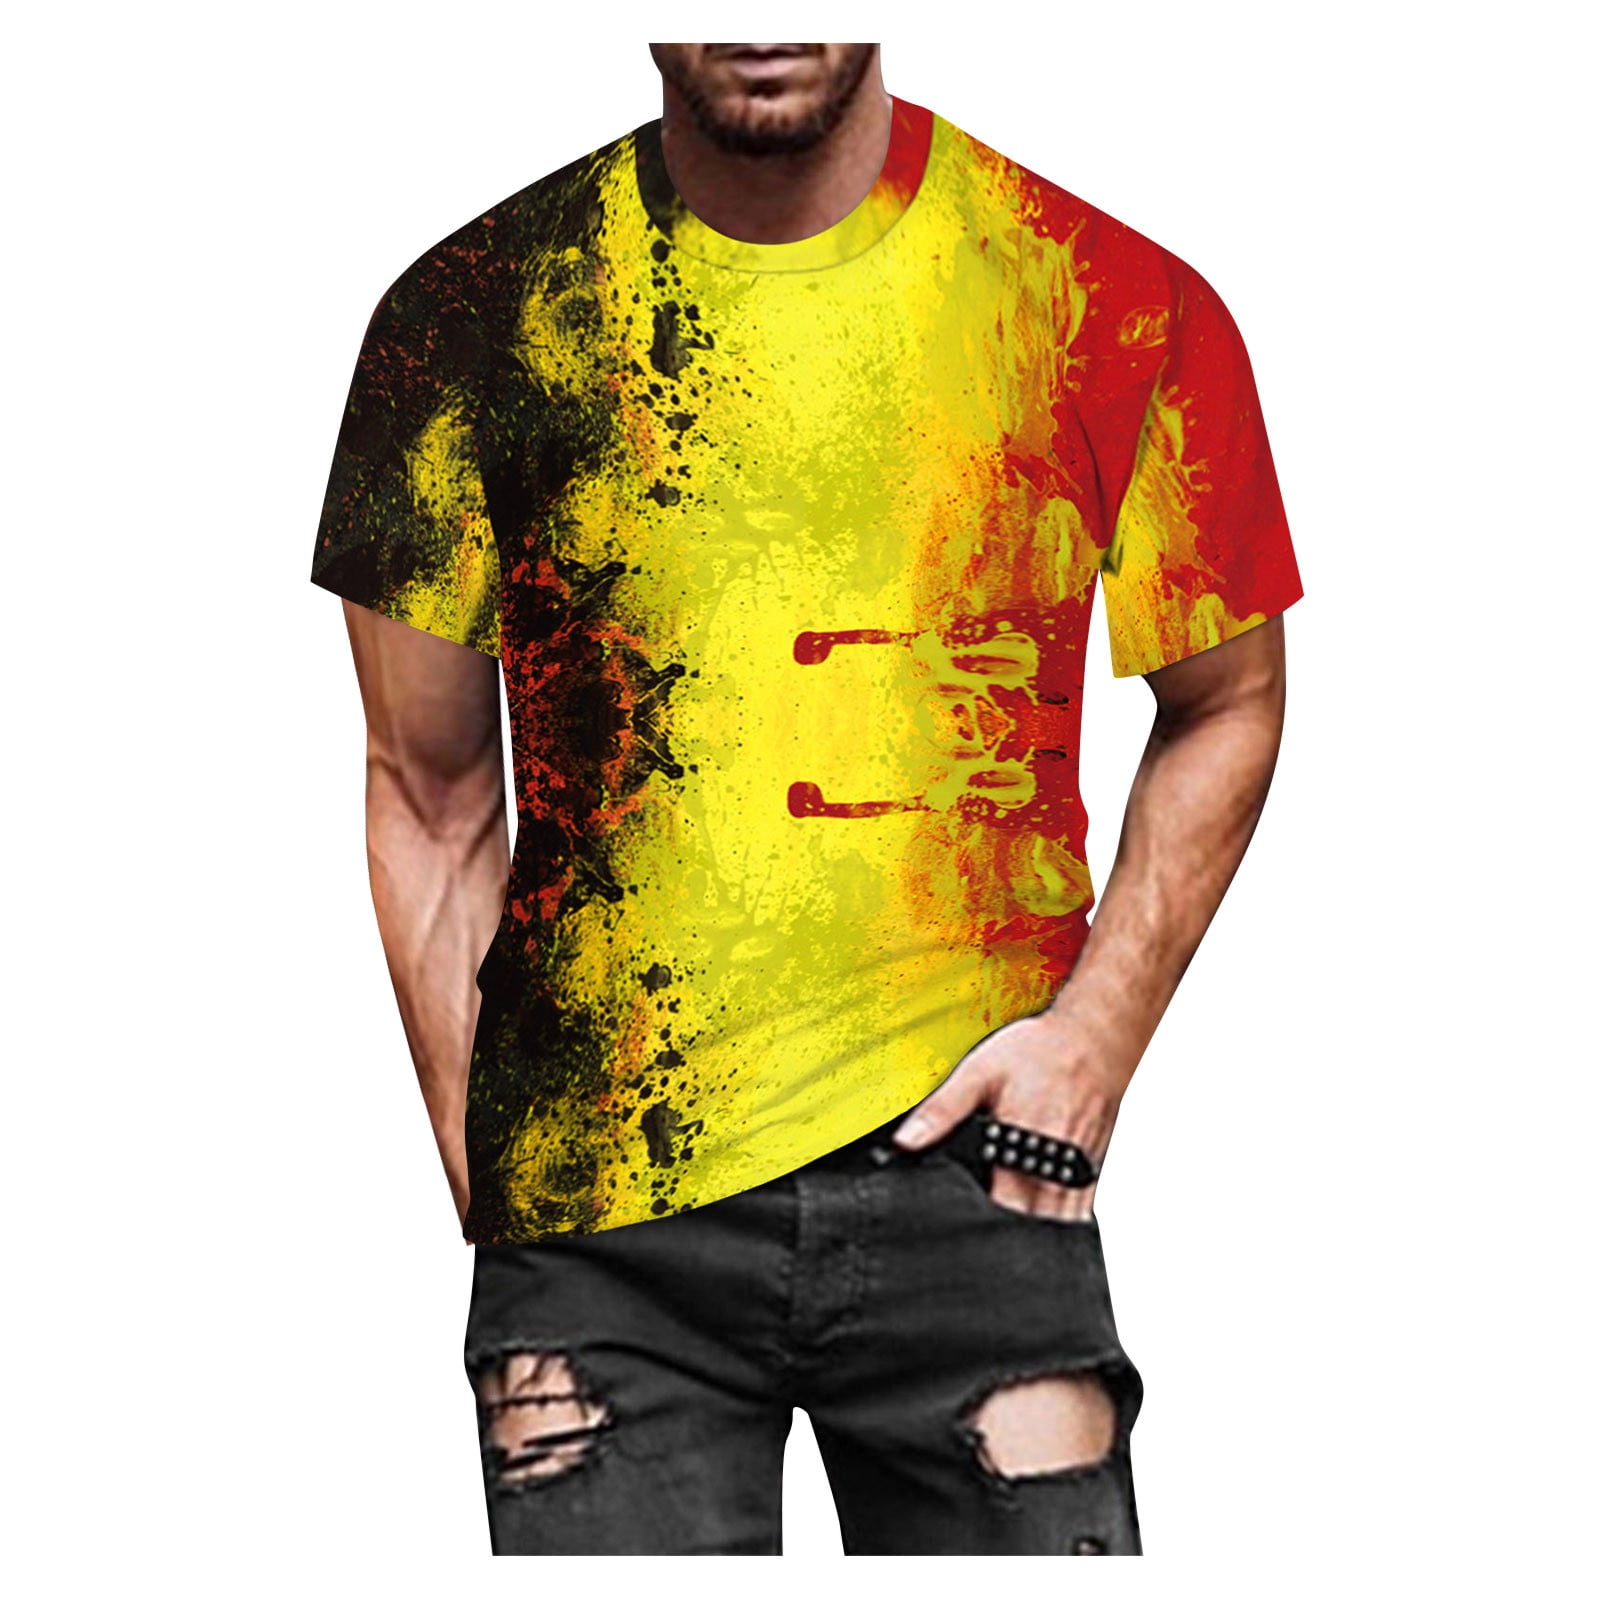 KIJBLAE Savings Men's T-Shirt Casual Tops Colorful Graphic 3D Print ...